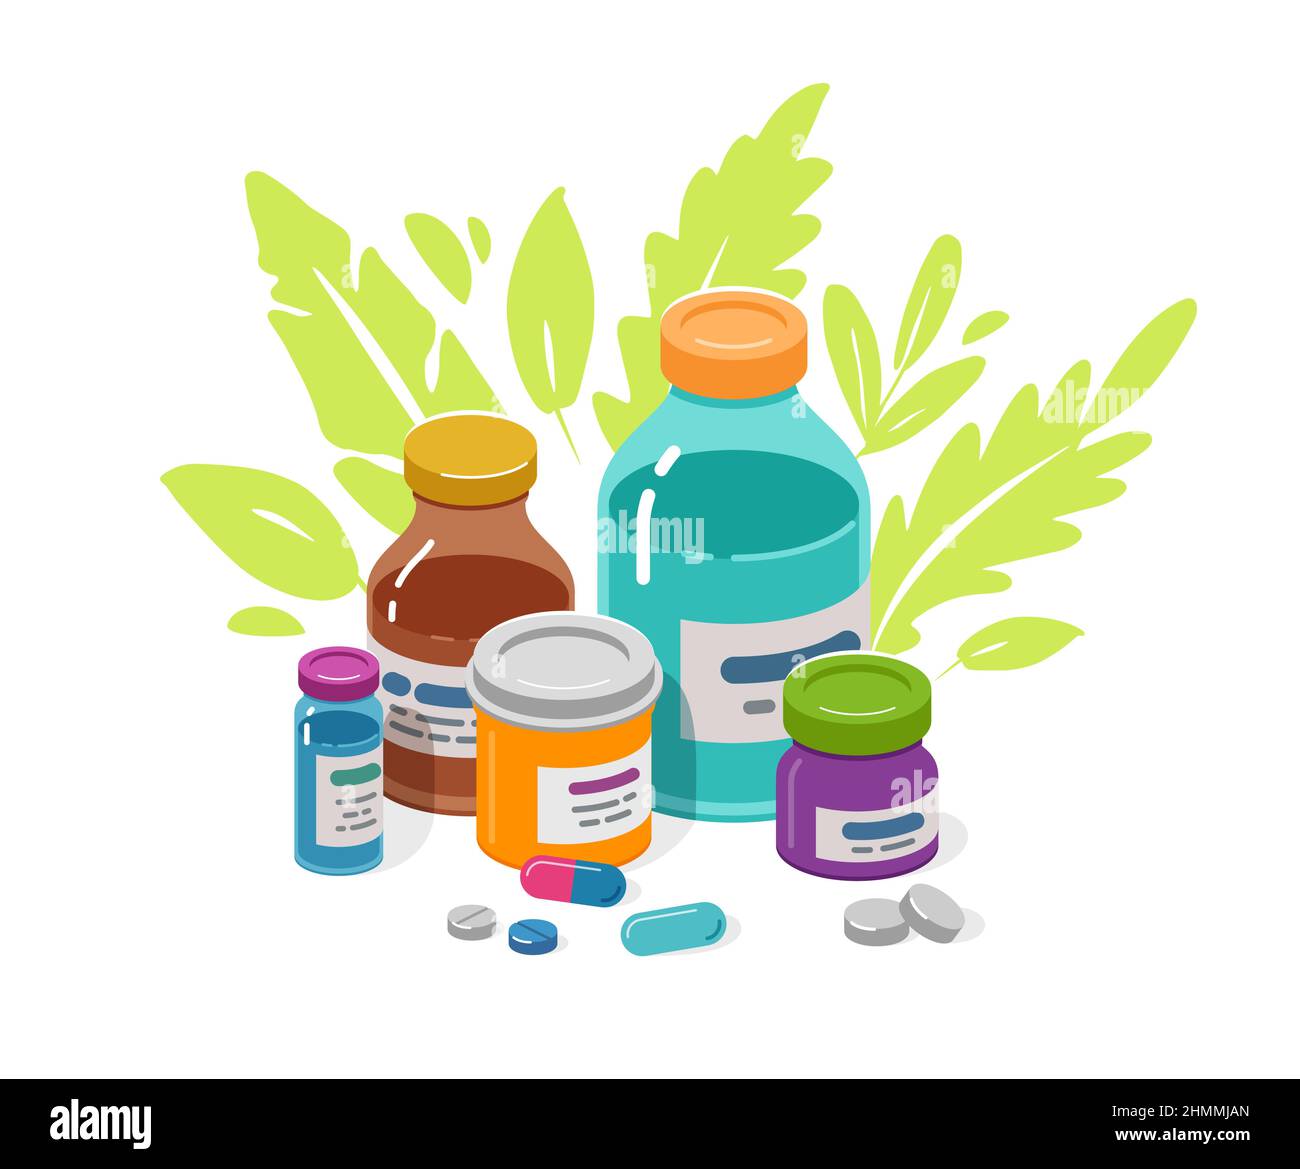 Medizinische Tabletten und Kapseln in Flaschen. Verschreibungspflichtige Medikamente, medizinische Apotheke ergänzt Vektor-Illustration Stock Vektor